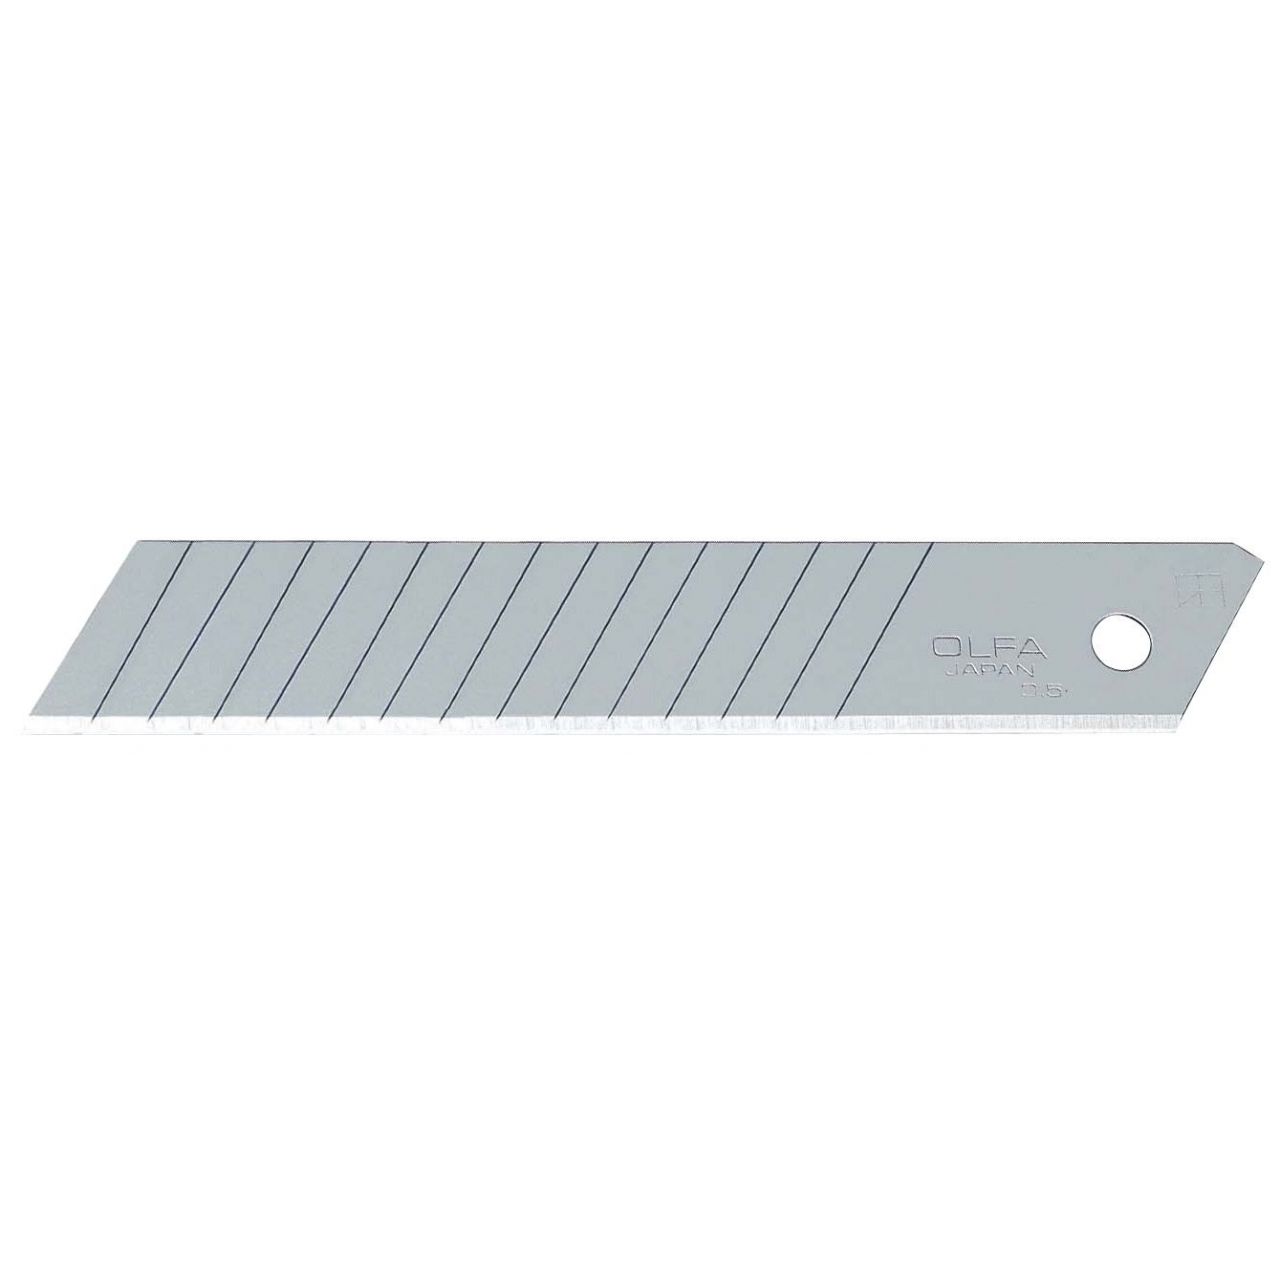 Pack de 50 cuchillas troceables 18 mm doble segmento plateadas